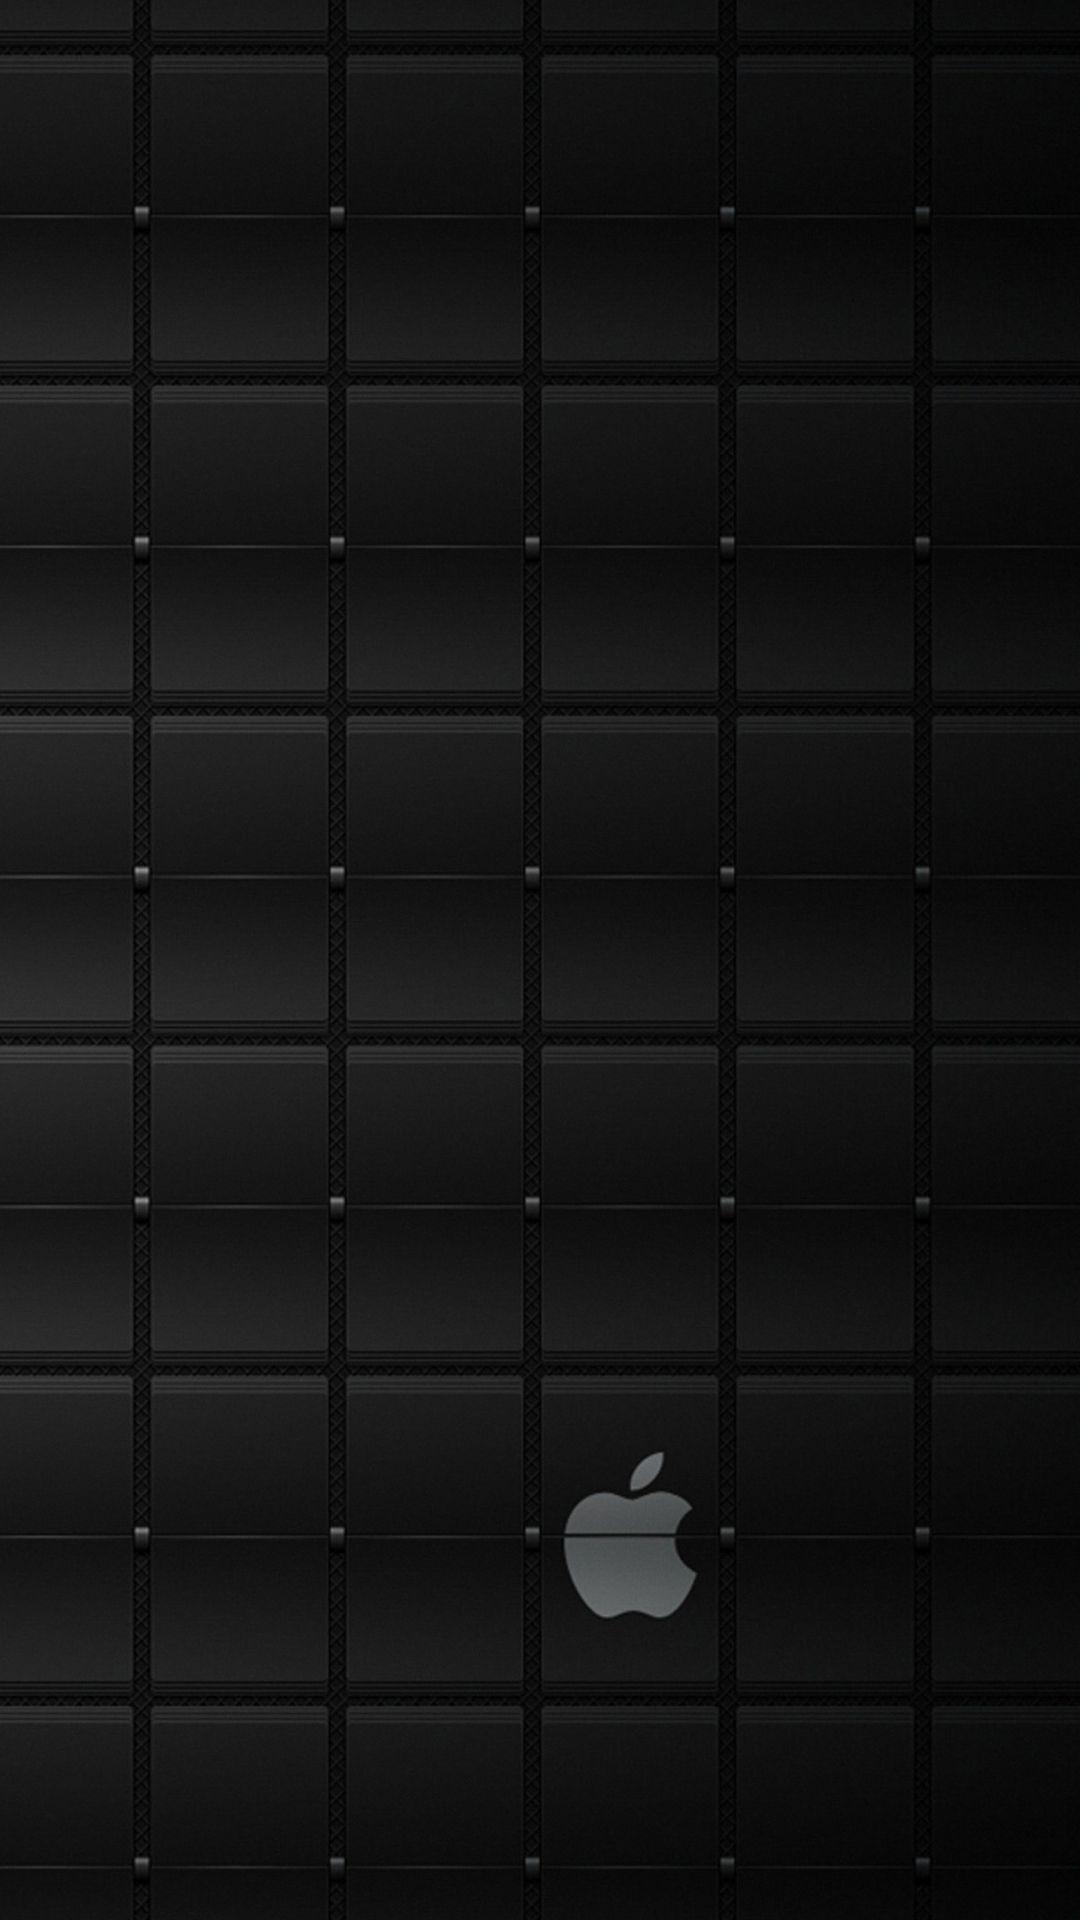 Chiếc táo của bạn sẽ trở nên độc đáo và nổi bật hơn với hình nền táo đen đẹp cho iPhone. Hình ảnh chân thực này sẽ cung cấp cho bạn sự độc đáo và phong cách khác biệt. Hãy tải hình nền táo đen và trang trí cho chiếc iPhone của bạn ngay hôm nay.